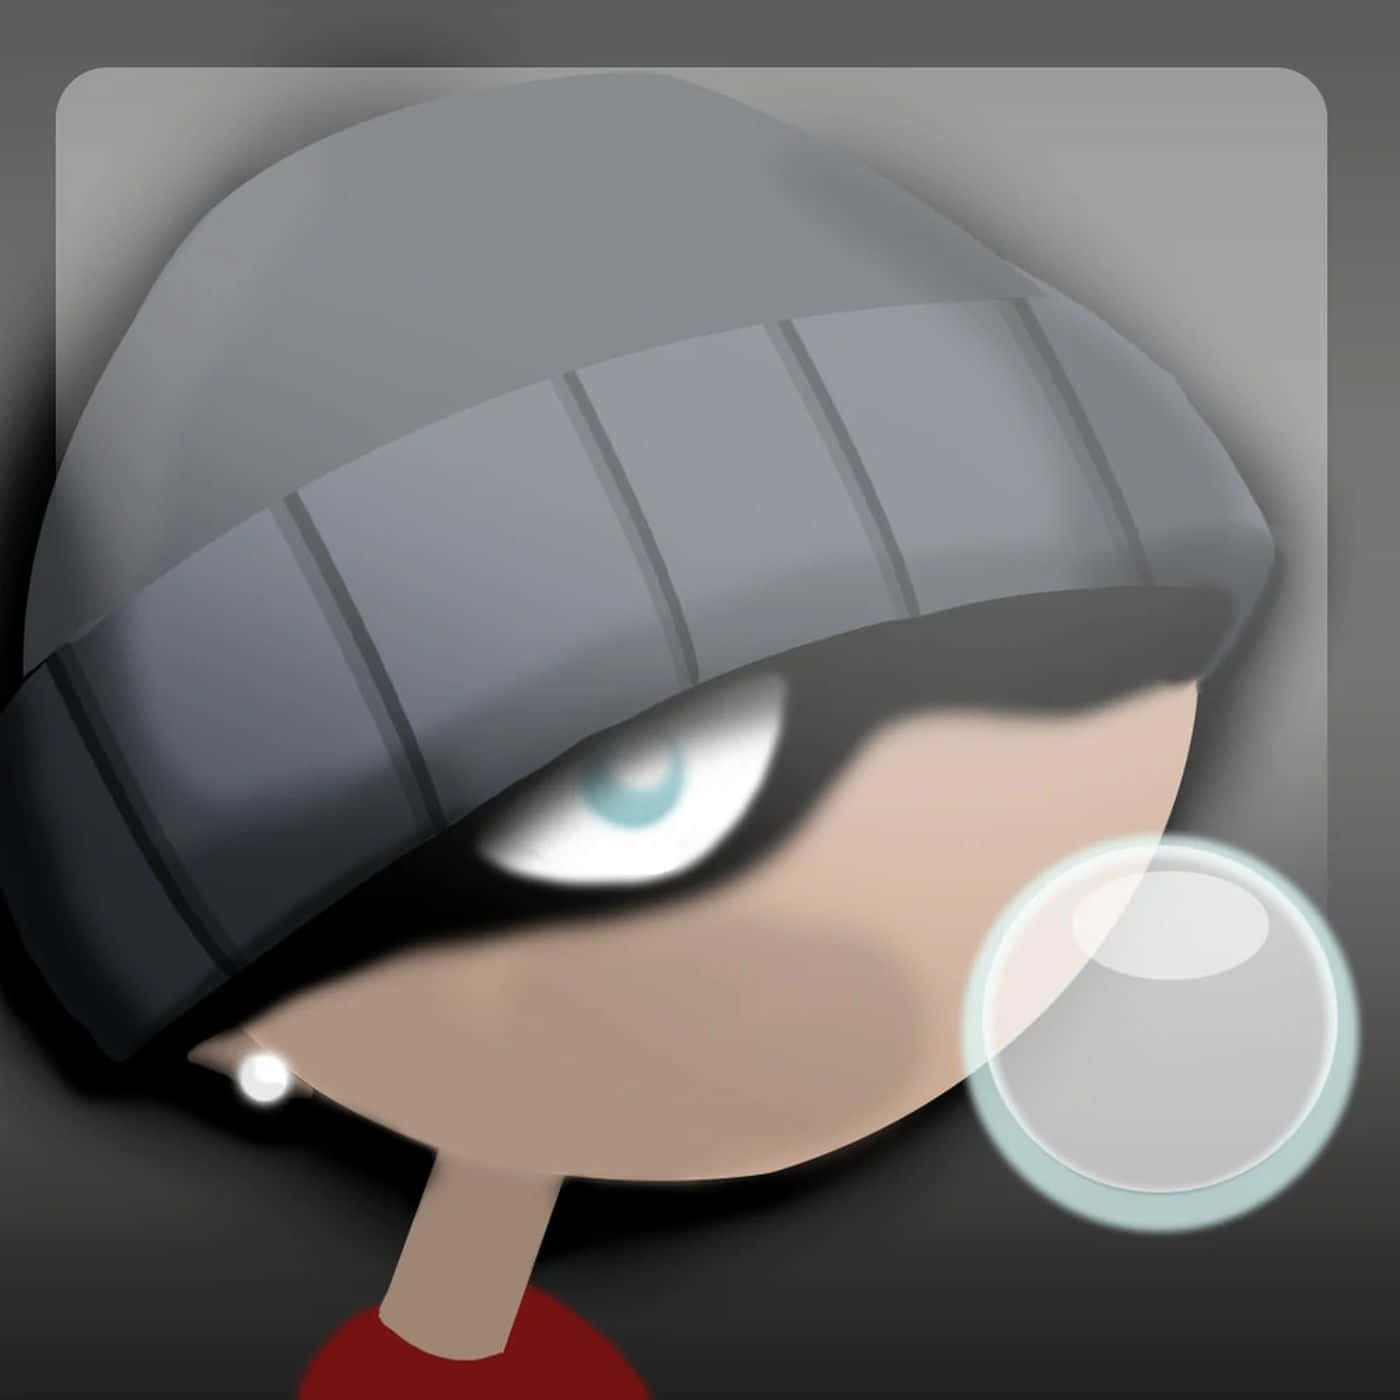 Immaginedel Profilo Beanie Kid Per Xbox 360.